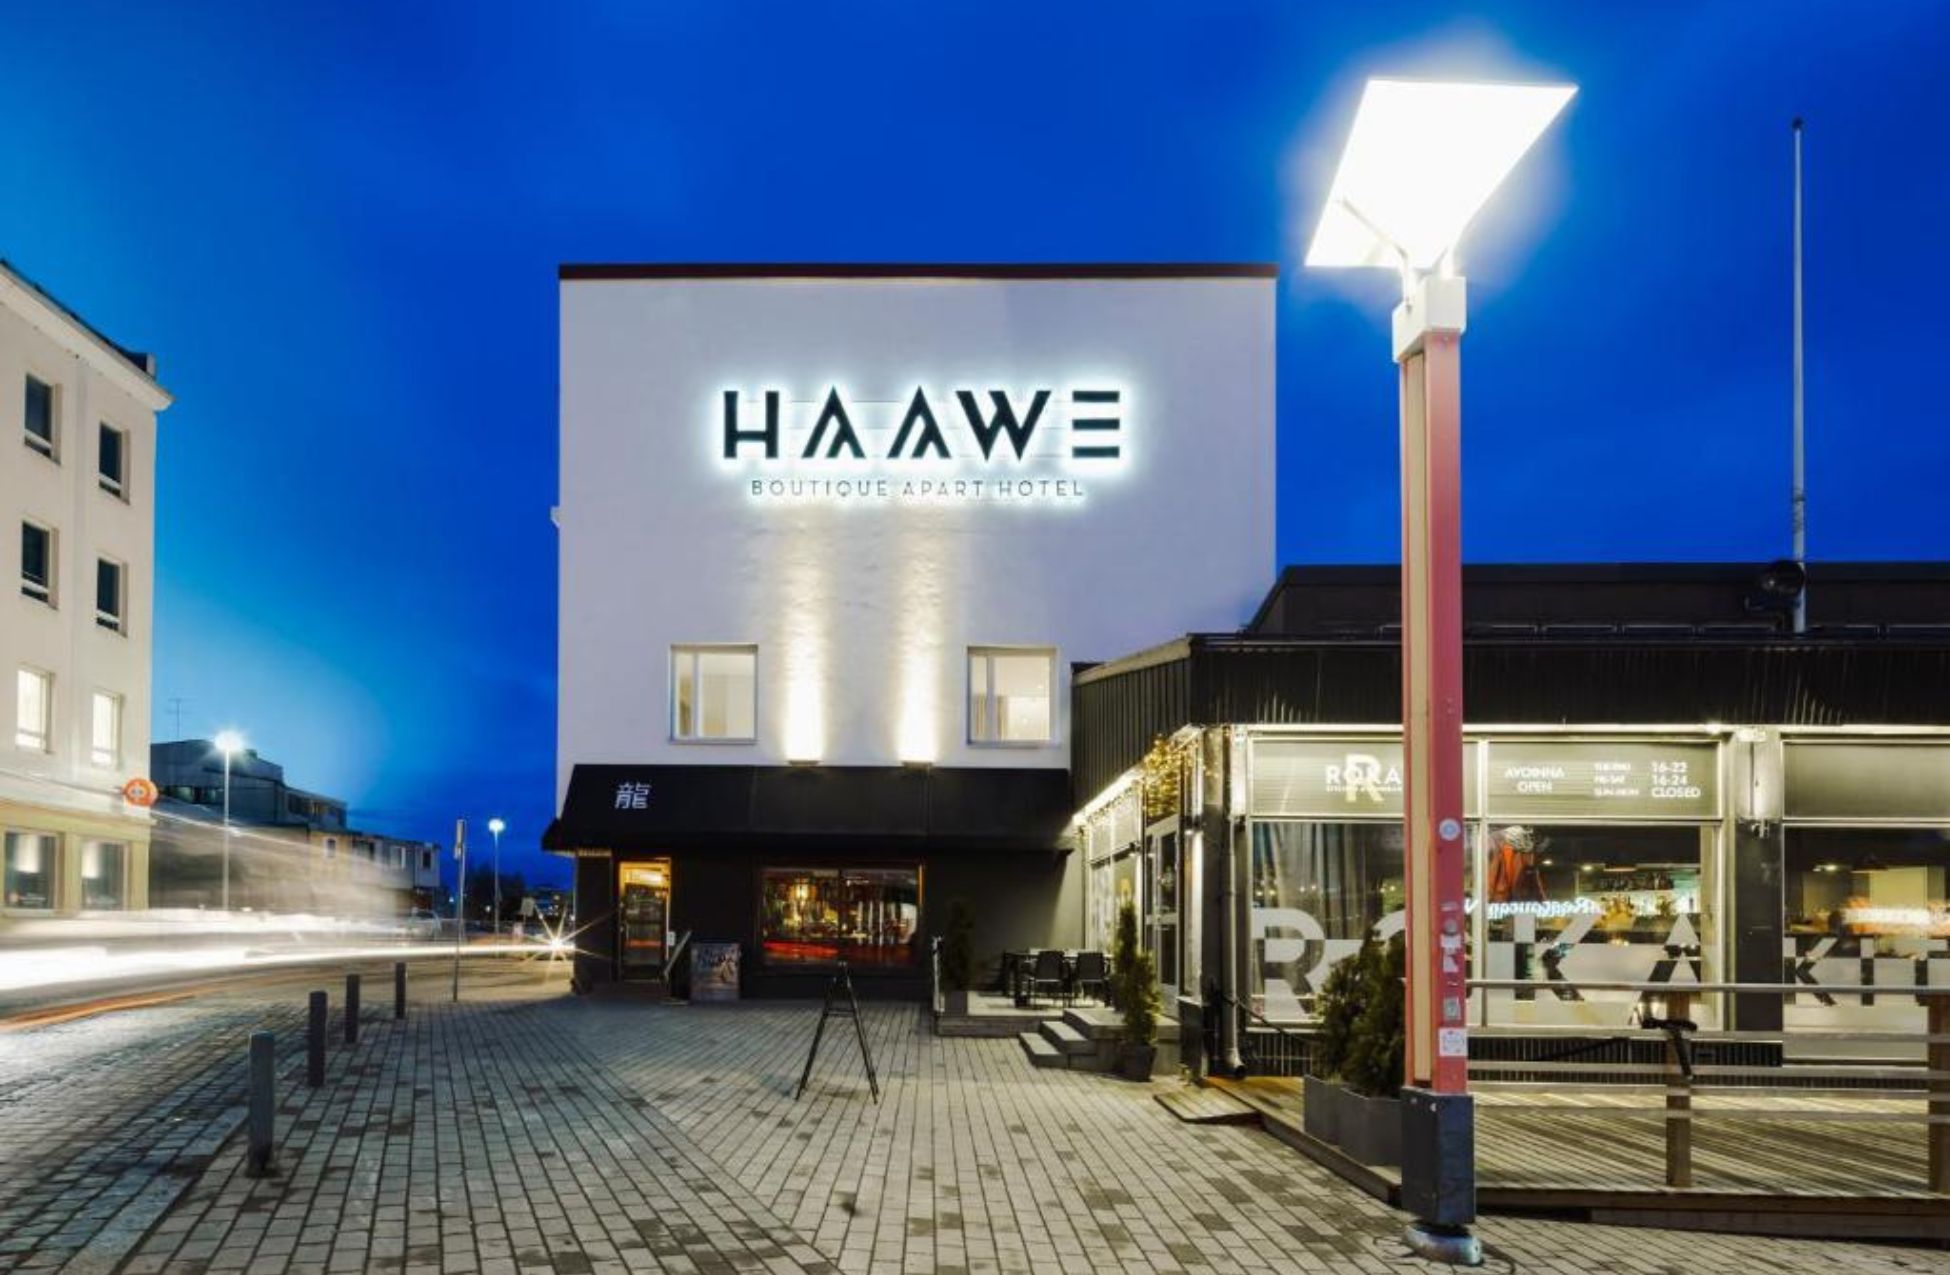 Haawe Boutique Apart Hotel - Best Hotels In Rovaniemi